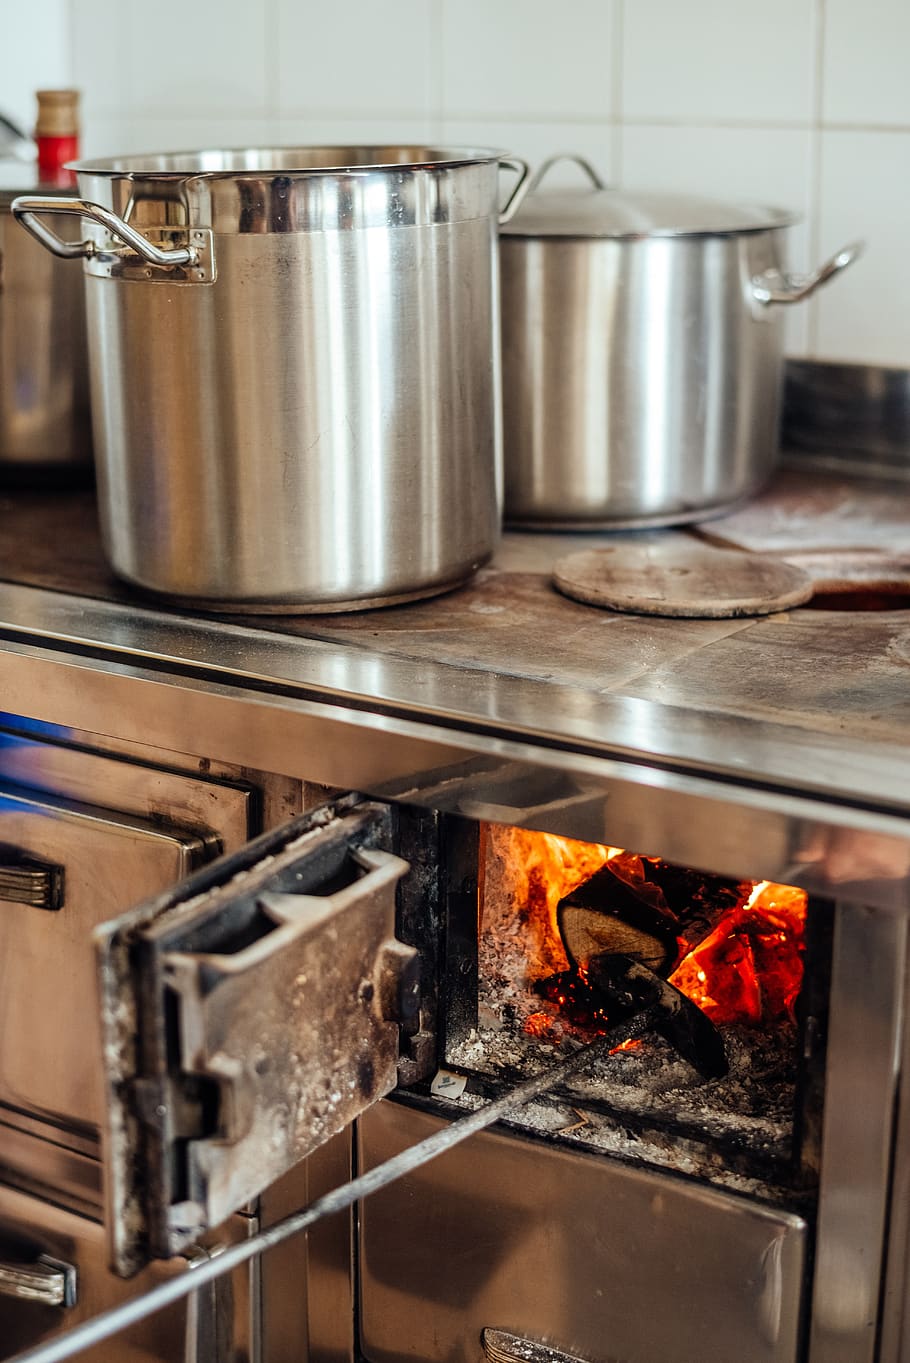 fogo a lenha, cozinhar, panela, fogão, velho, forno, fogão a lenha, lareira, aparelho, temperatura ambiente